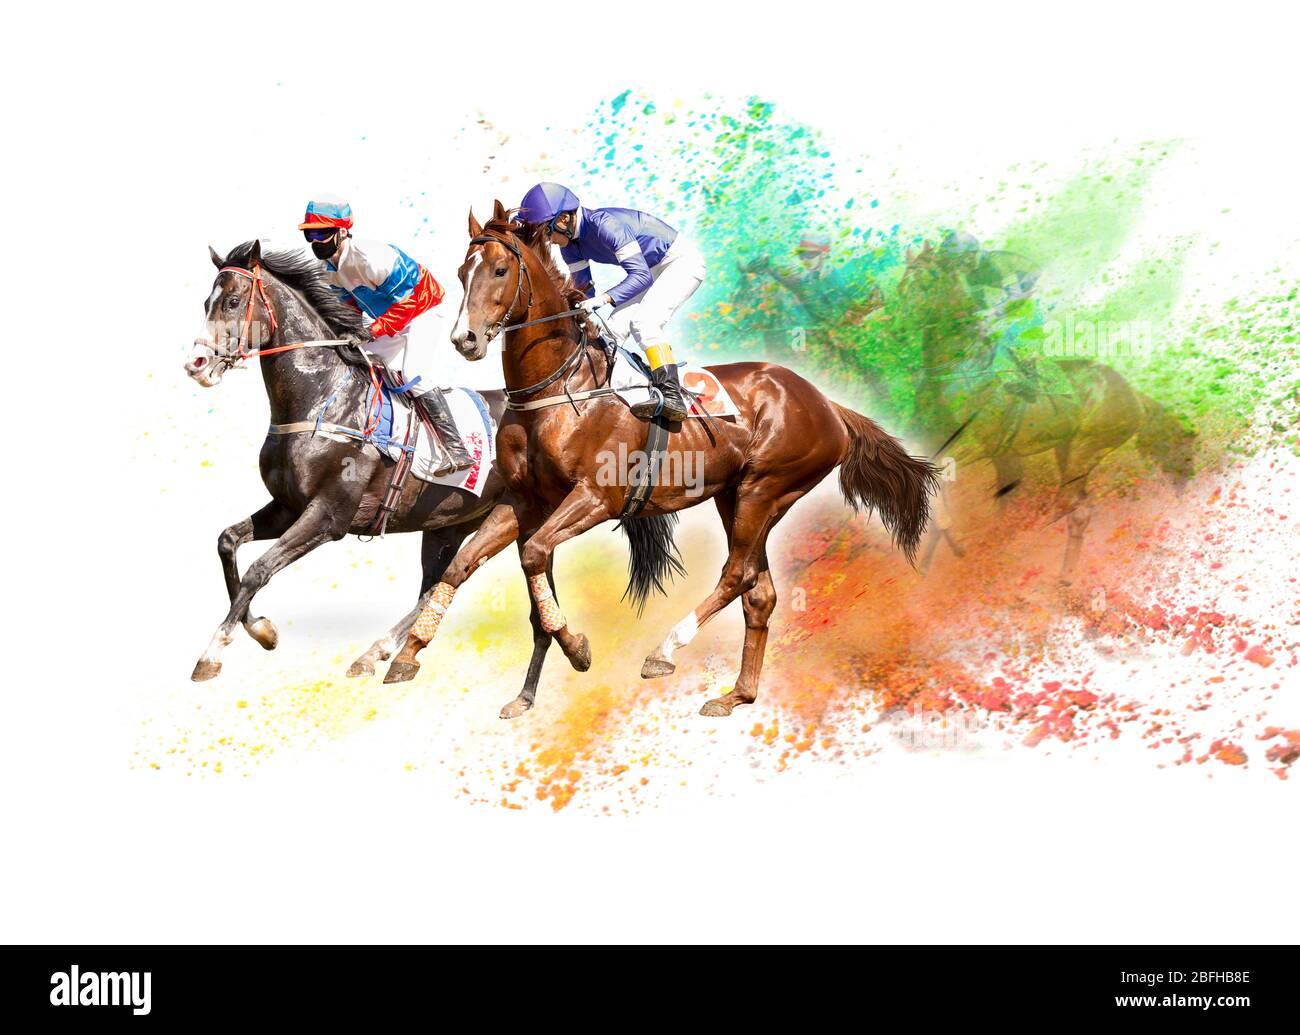 Vier Rennen Pferde Hals Hals im harten Wettbewerb um die Ziellinie. Digitale Collage Stockfoto